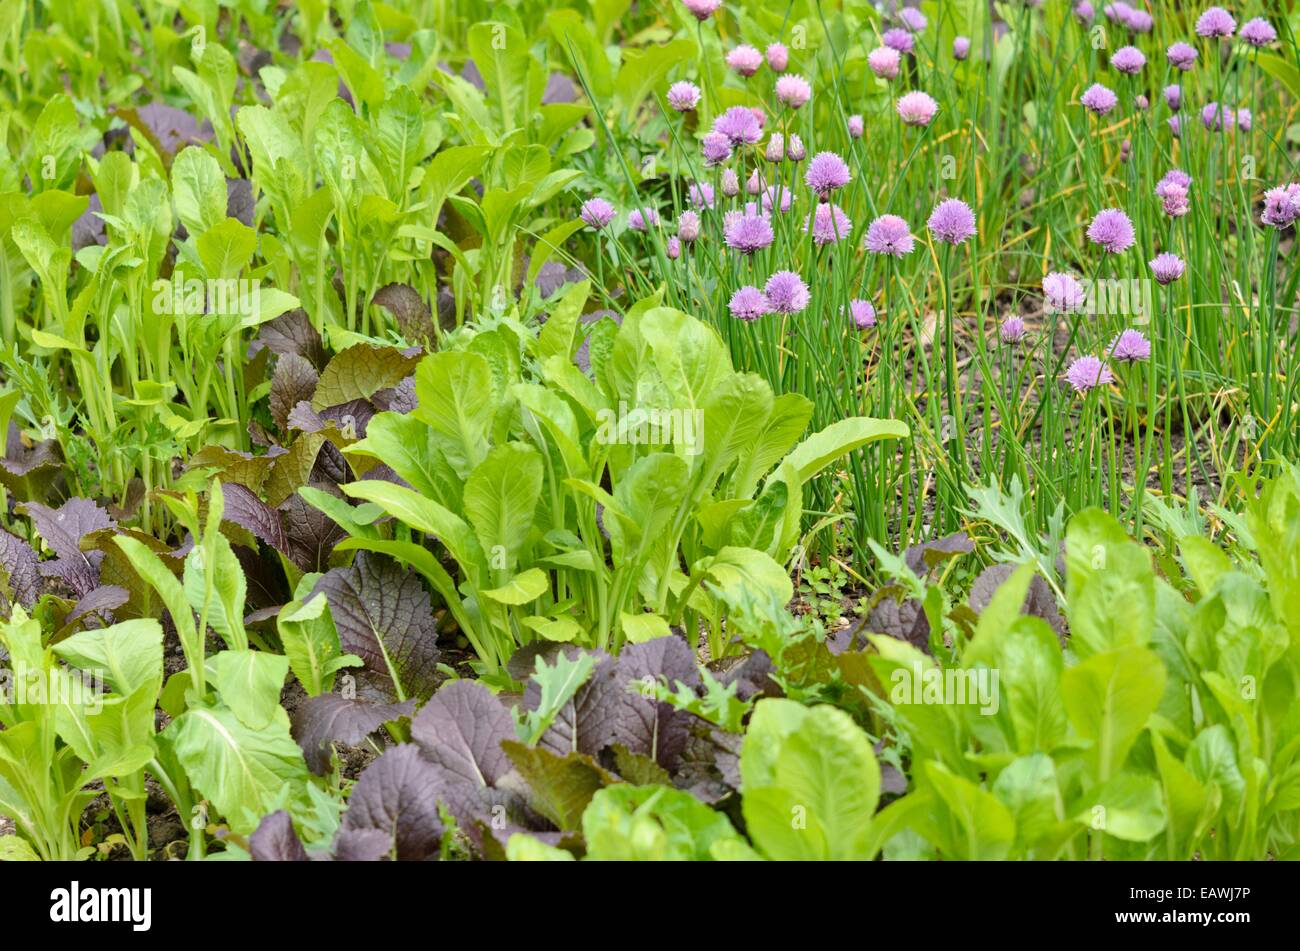 Chinese mustard (Brassica juncea) and chives (Allium schoenoprasum) Stock Photo